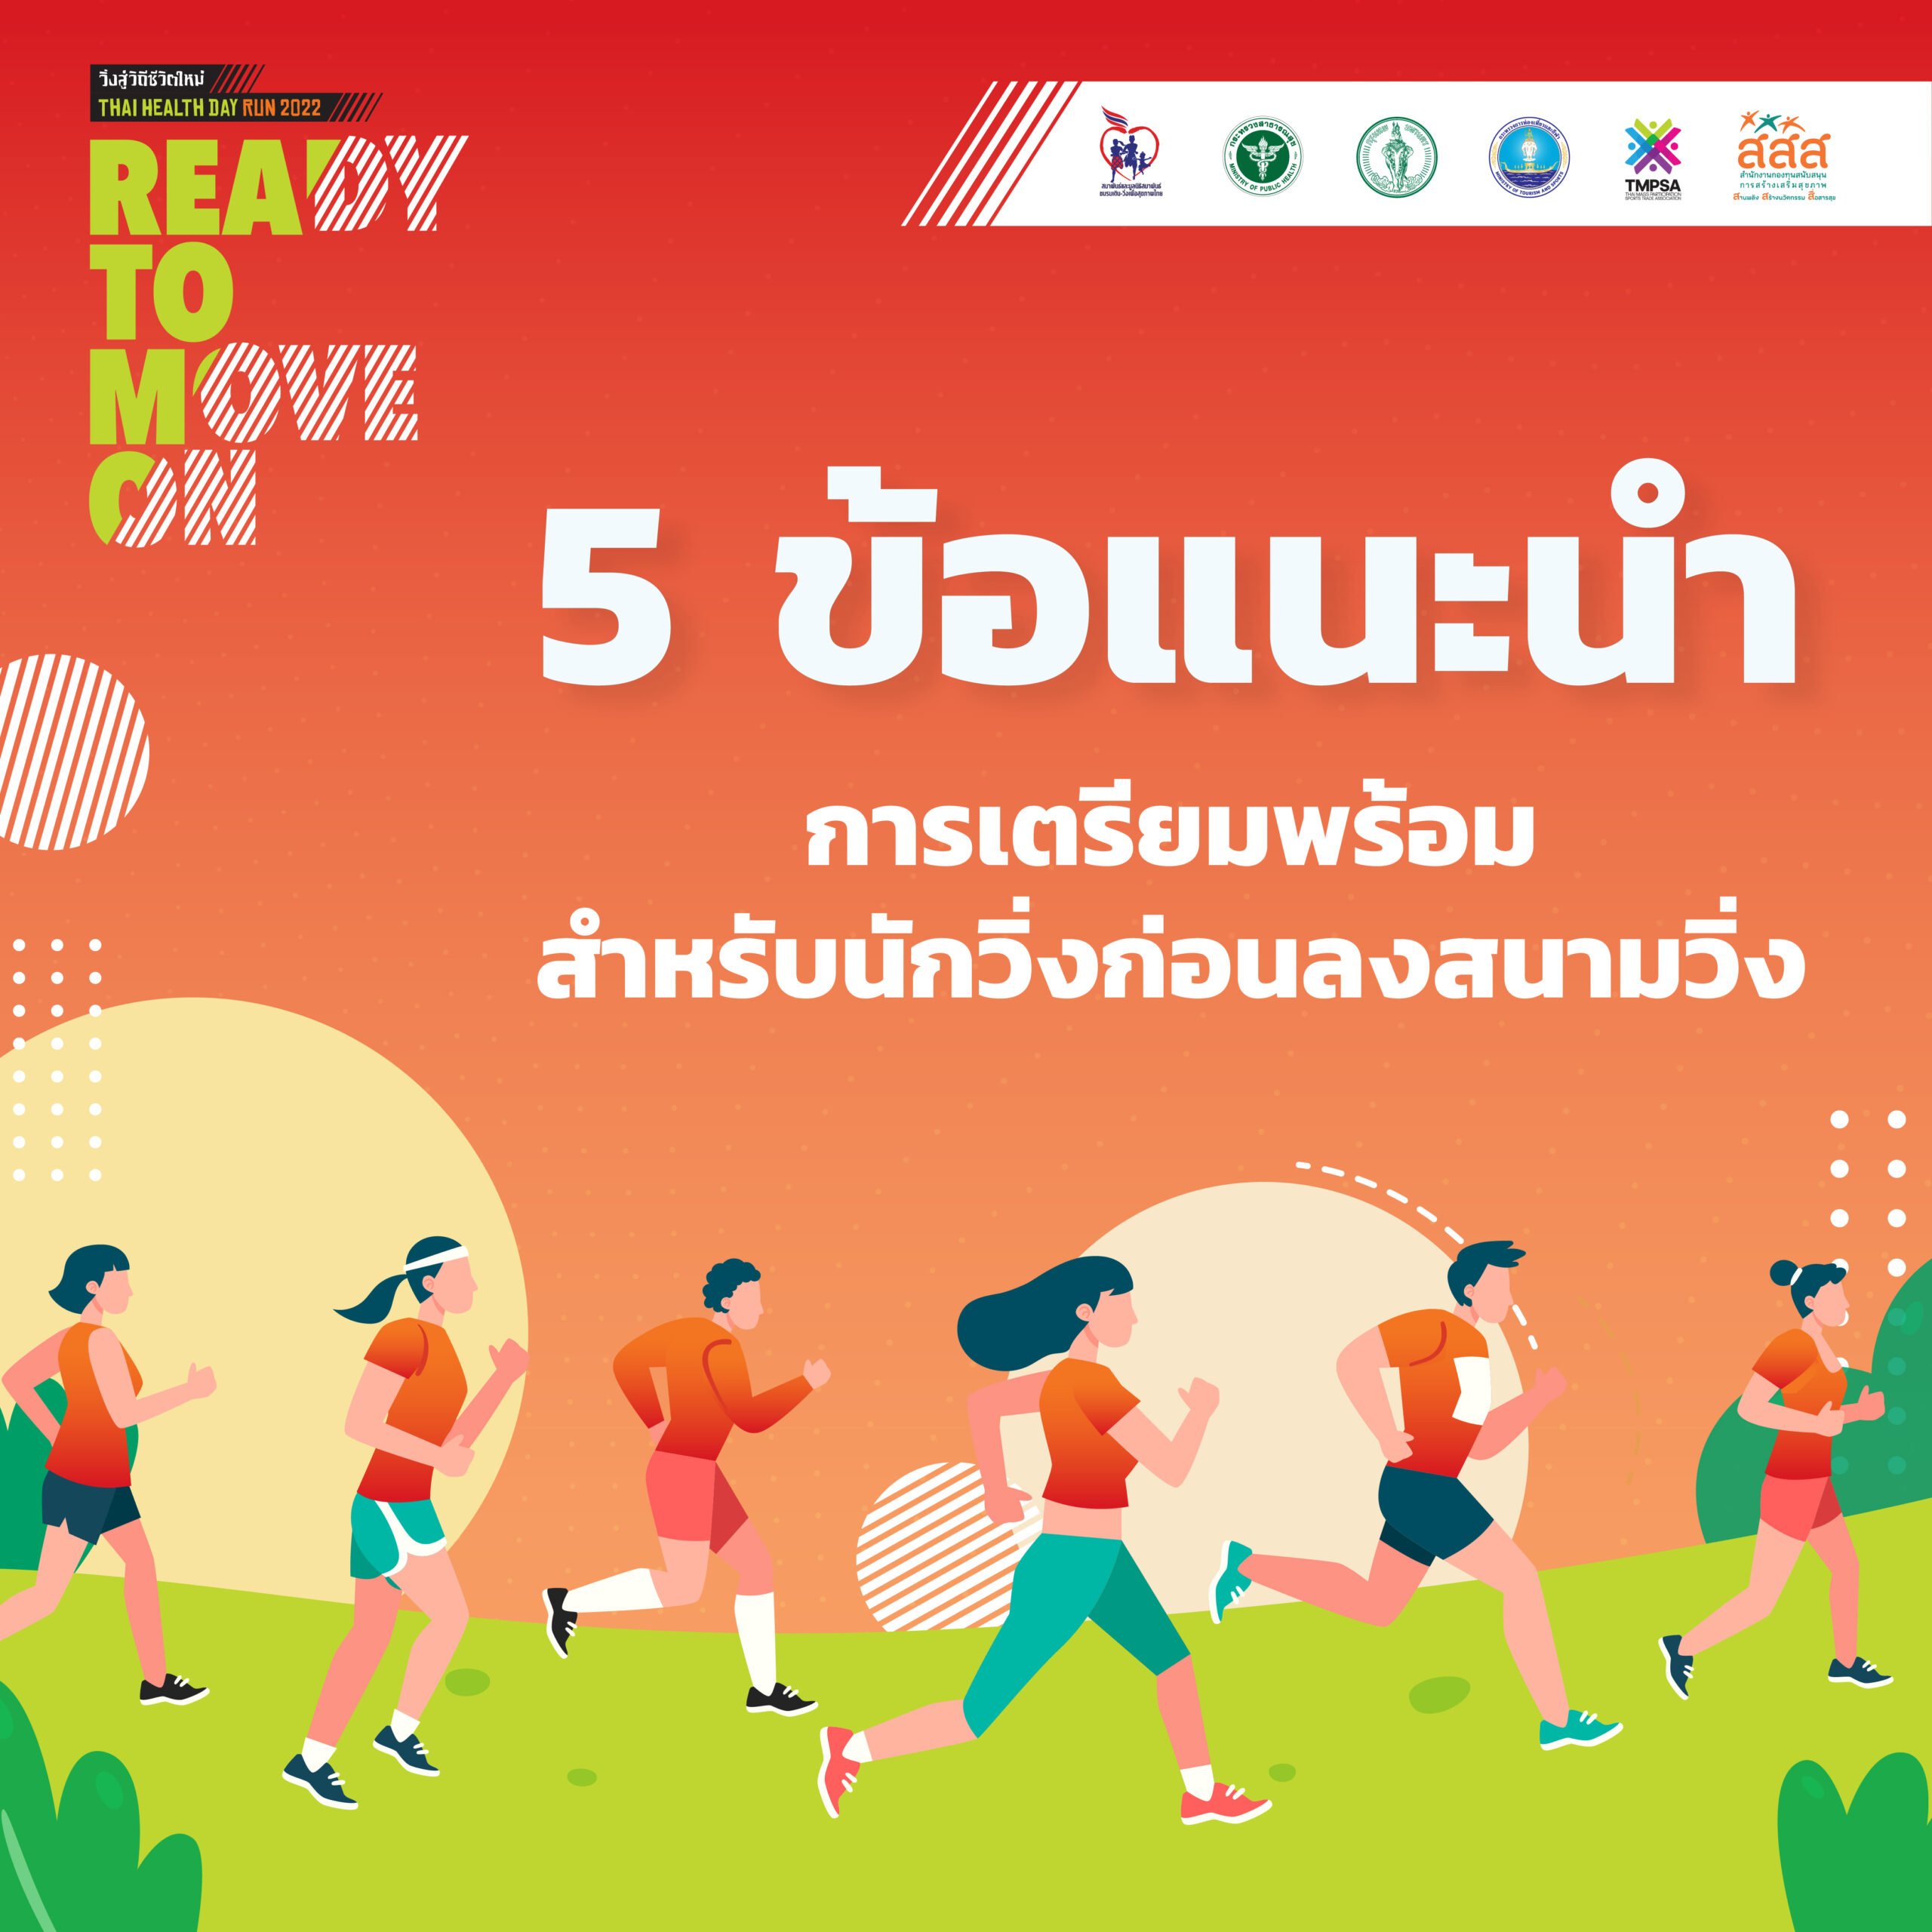 5 ข้อแนะนำ การเตรียมพร้อมสำหรับนักวิ่งก่อนลงสนามวิ่ง